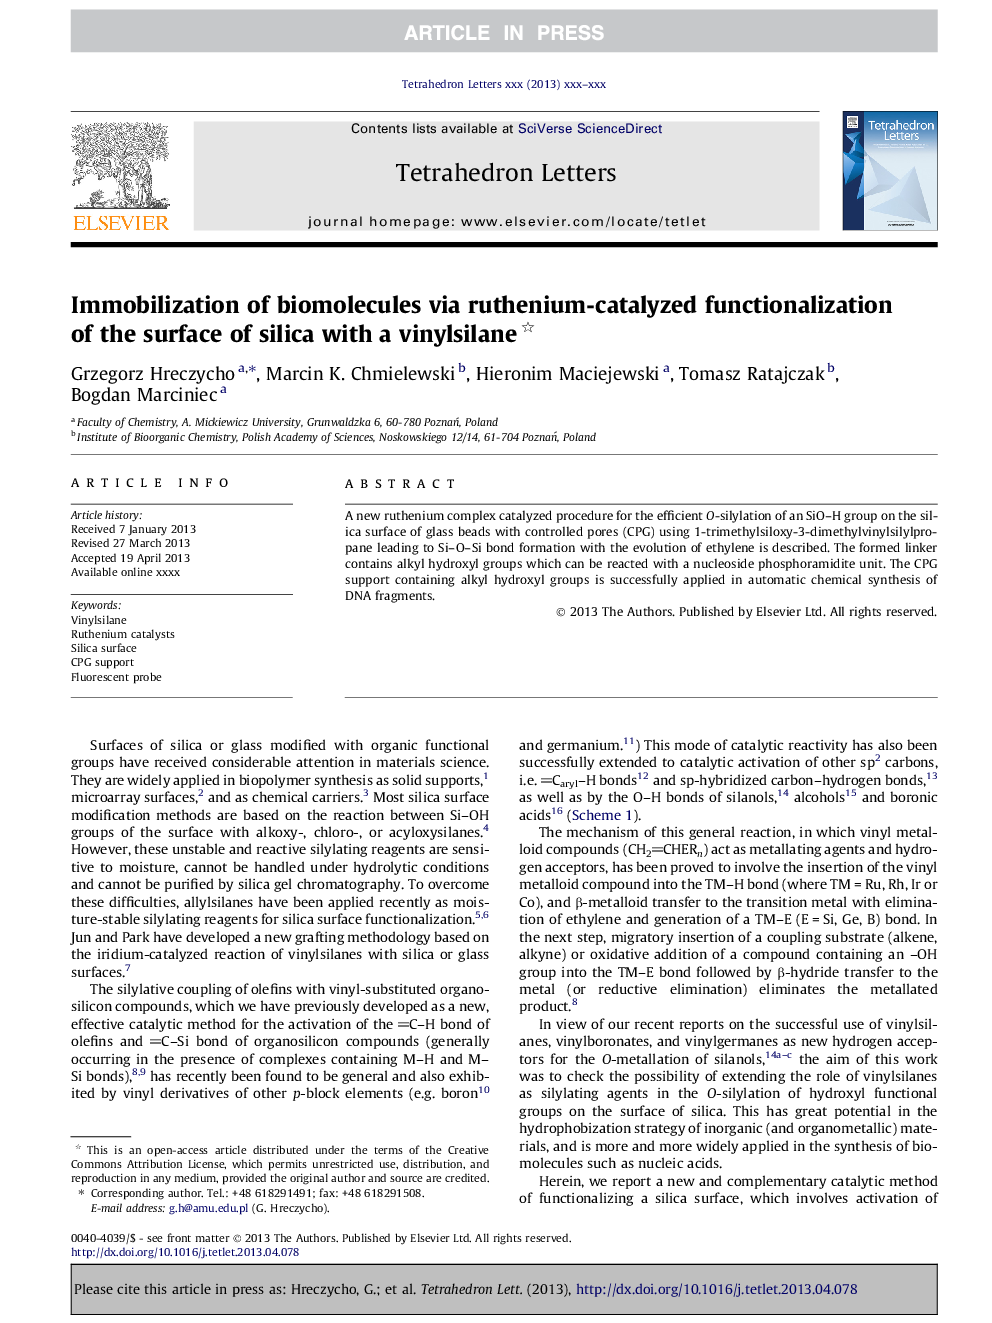 ایمولیزاسیون بیومولکول ها از طریق کارکردن کاتالیزوری روتنیوم سطح سیلیکا با وینیل سیلان 